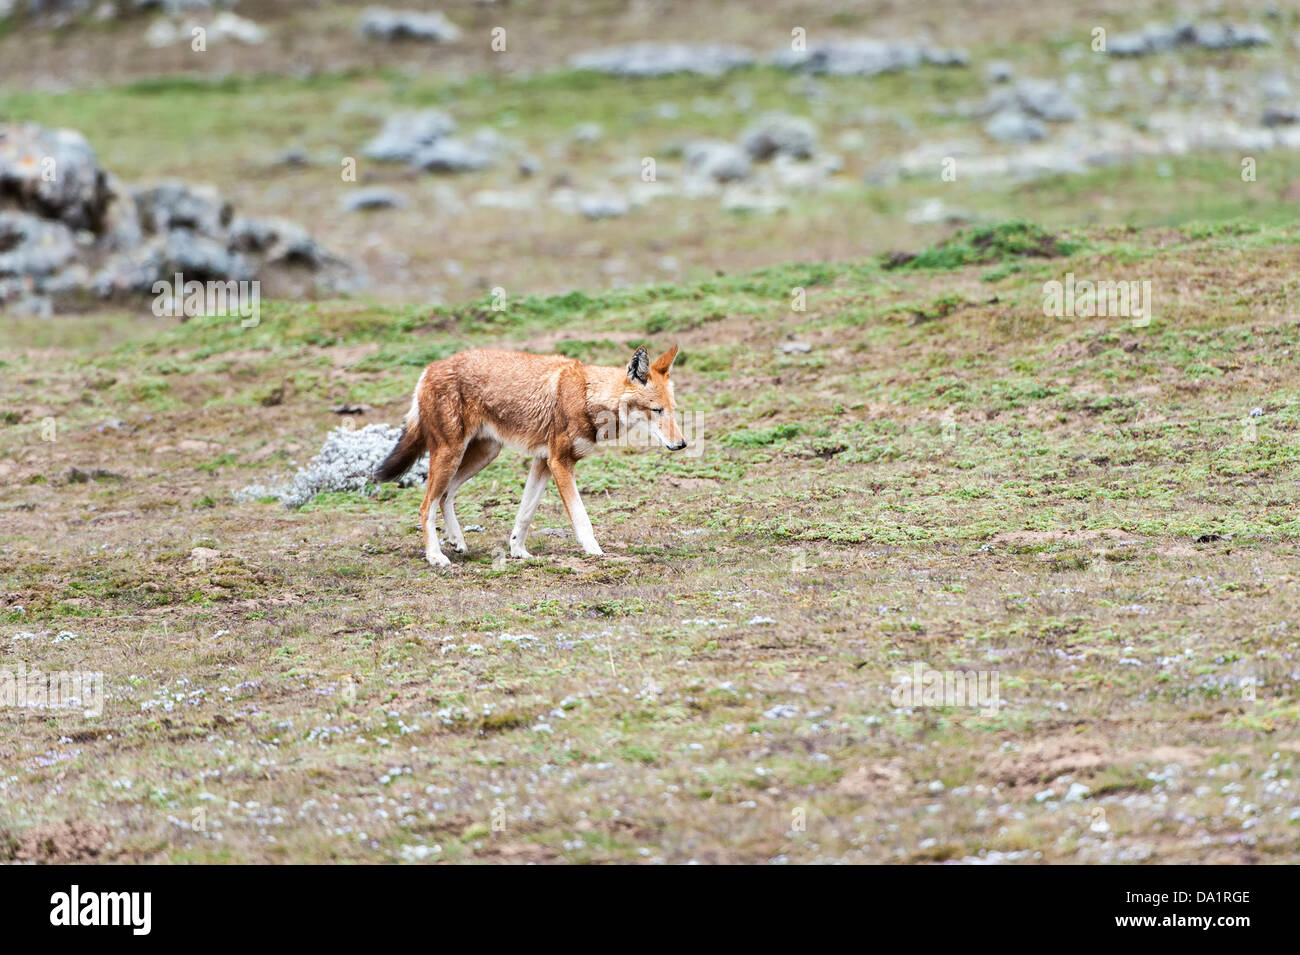 Ethiopian Wolf (Canis simensis), Bale mountains national park, Ethiopia Stock Photo